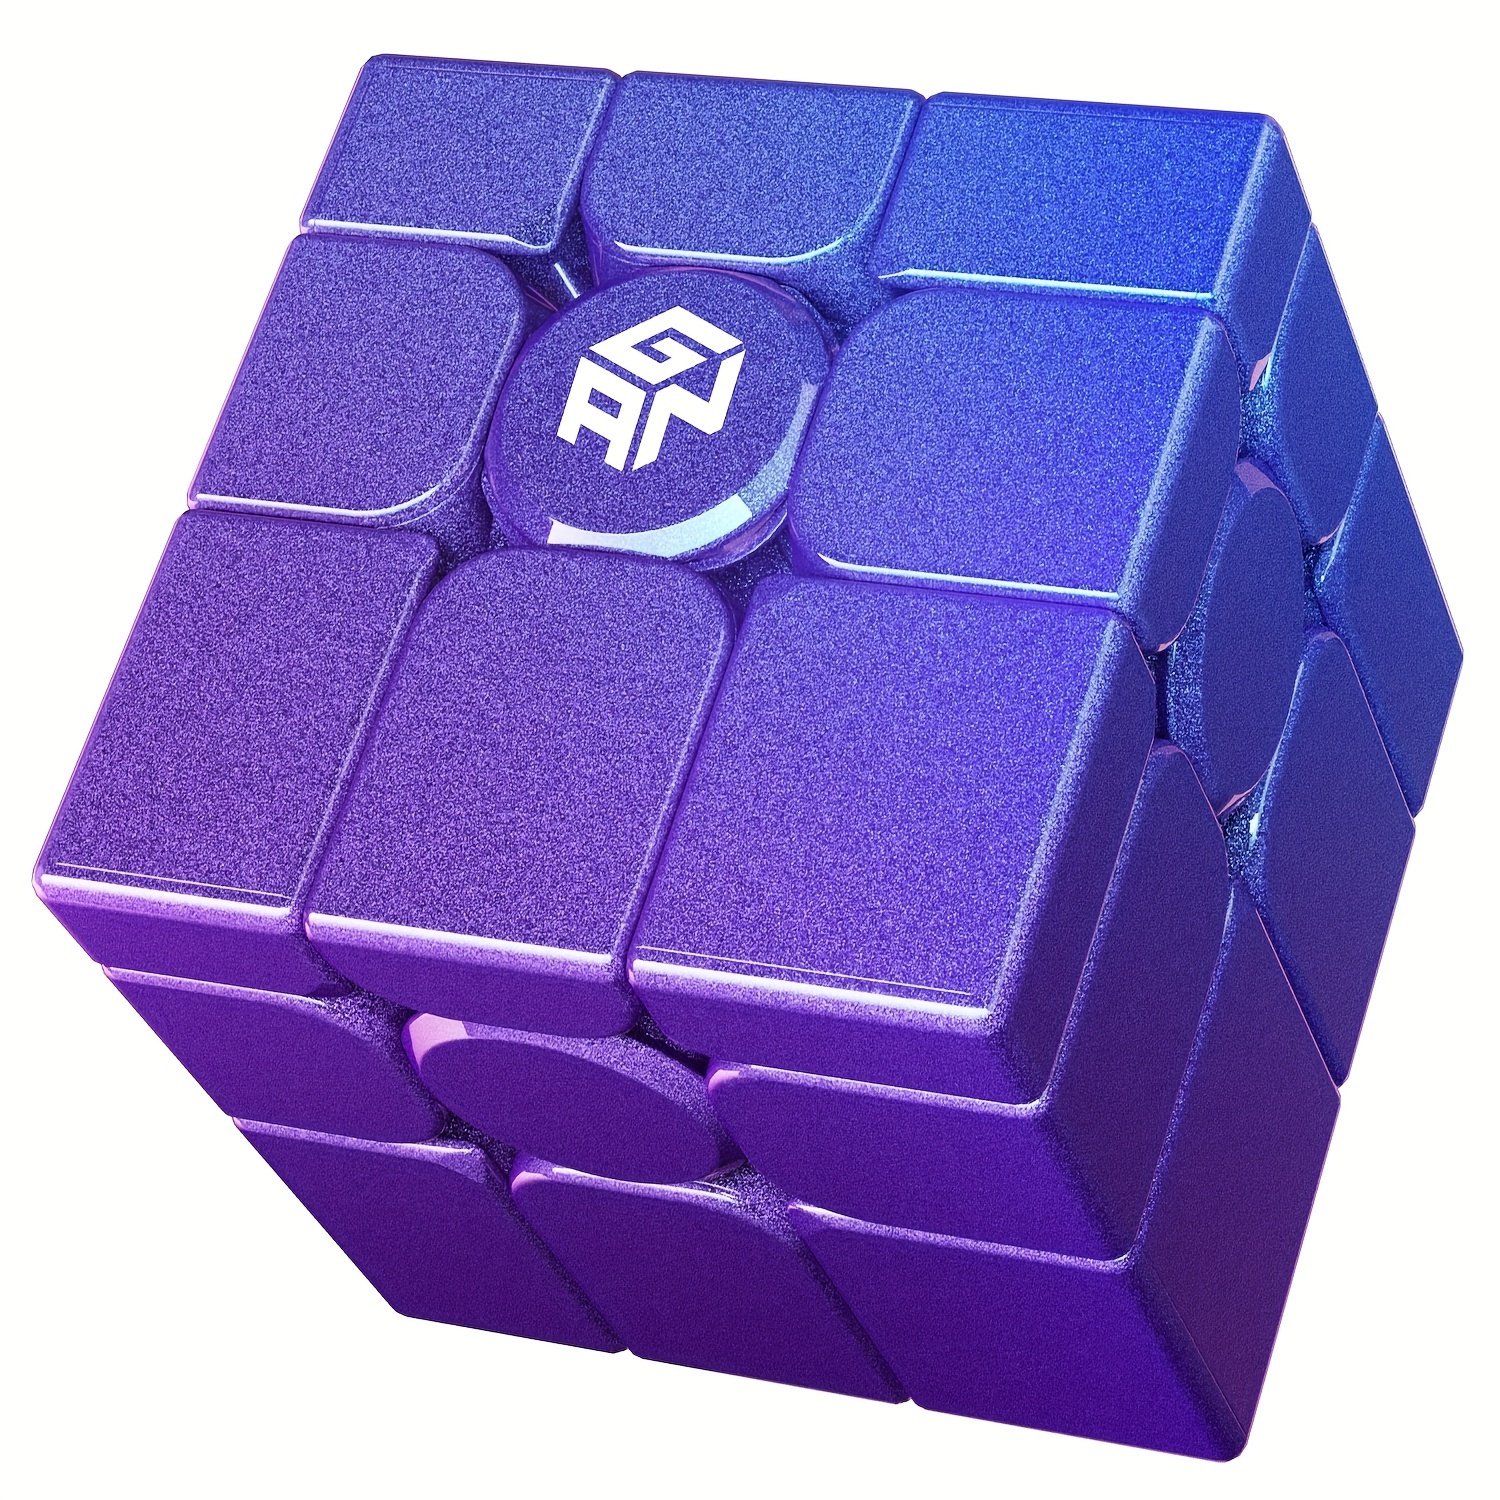 GAN Cube de Vitesse 356RS 3x3x3, Speed Cube Classique Résolution